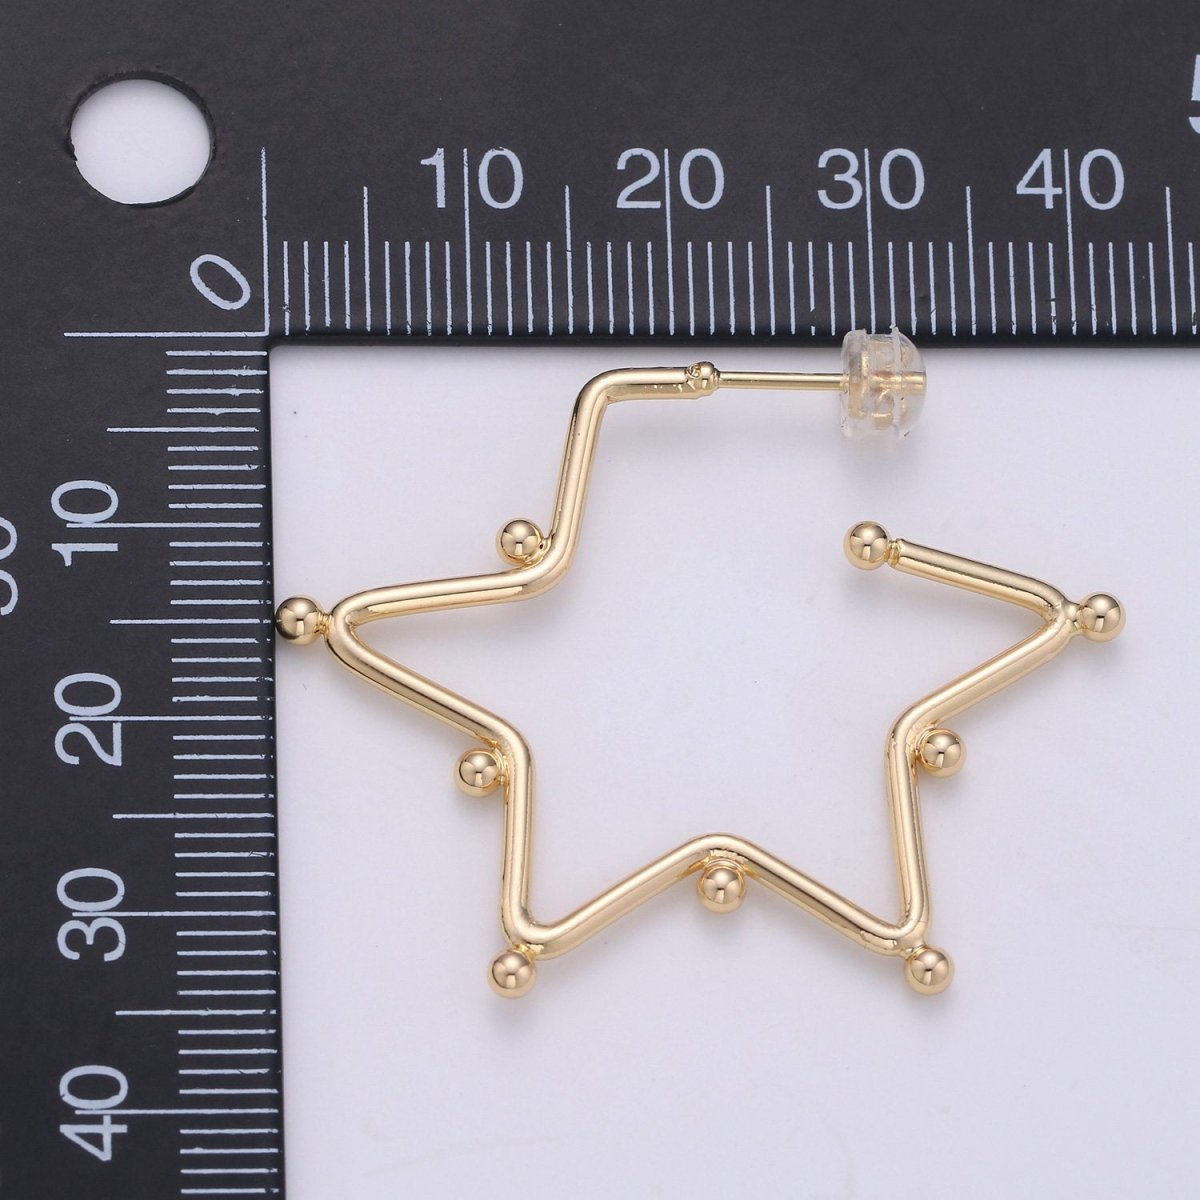 18K Gold Filled Ball Hoop Earrings, Beaded Hoop Earrings, Star Hoop Earrings, Gold Ball Hoop Earrings, 25mm 35mm 45mm Gold Hoop Earring Q-089 Q-090 - DLUXCA